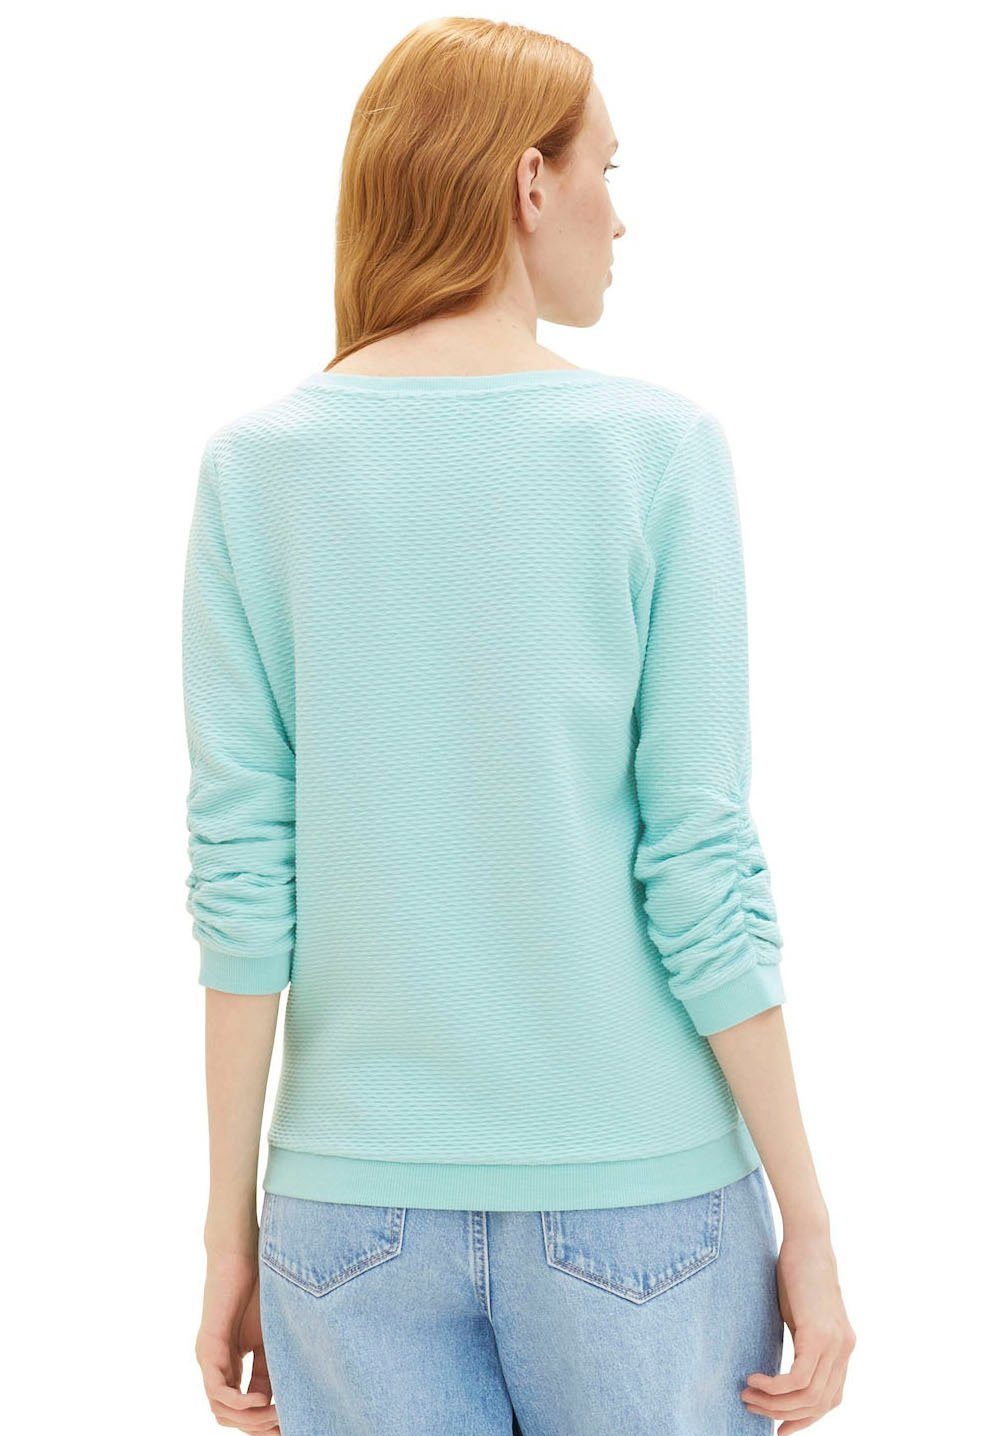 Sweatshirt mit Materialoberfläche pastel besonderer TAILOR Denim TOM turquoise